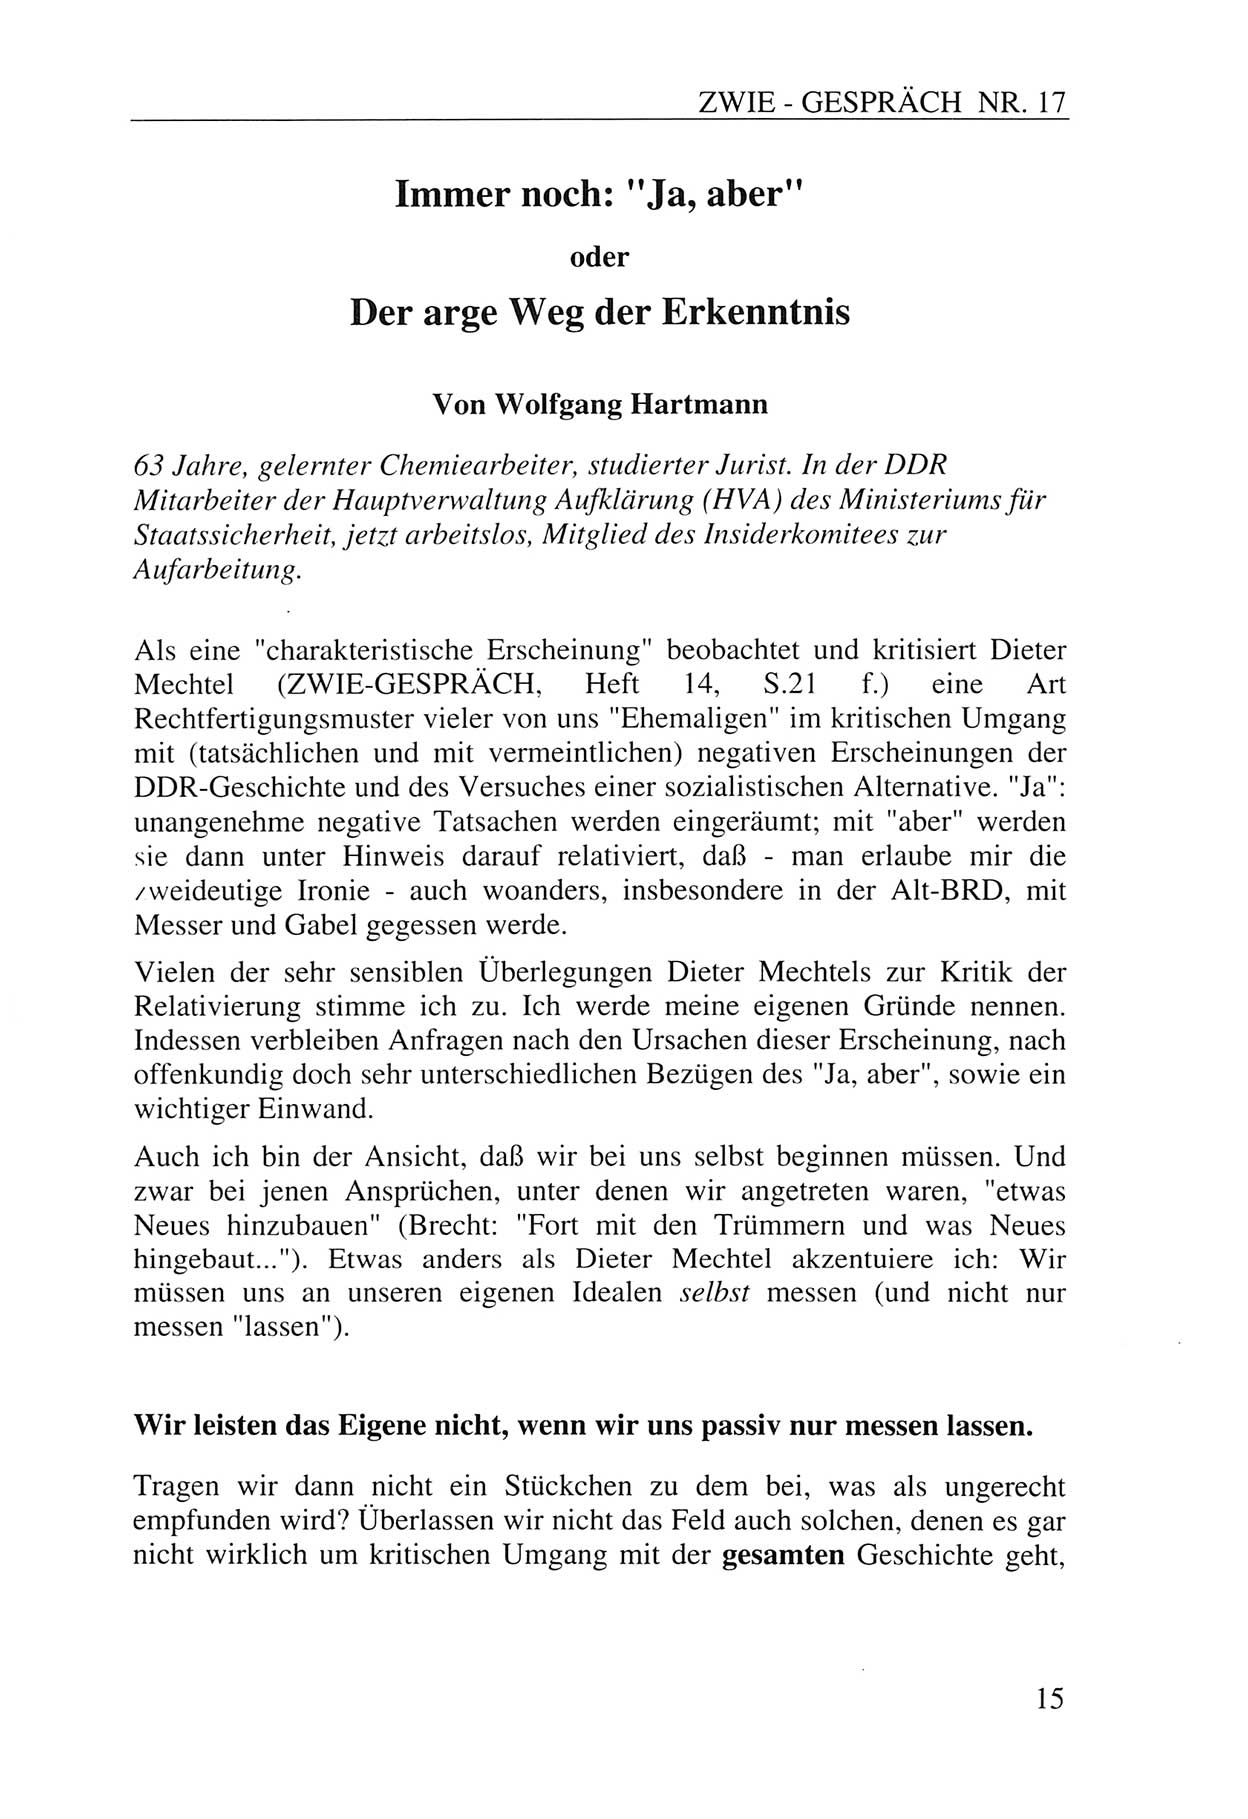 Zwie-Gespräch, Beiträge zur Aufarbeitung der Staatssicherheits-Vergangenheit [Deutsche Demokratische Republik (DDR)], Ausgabe Nr. 17, Berlin 1993, Seite 15 (Zwie-Gespr. Ausg. 17 1993, S. 15)